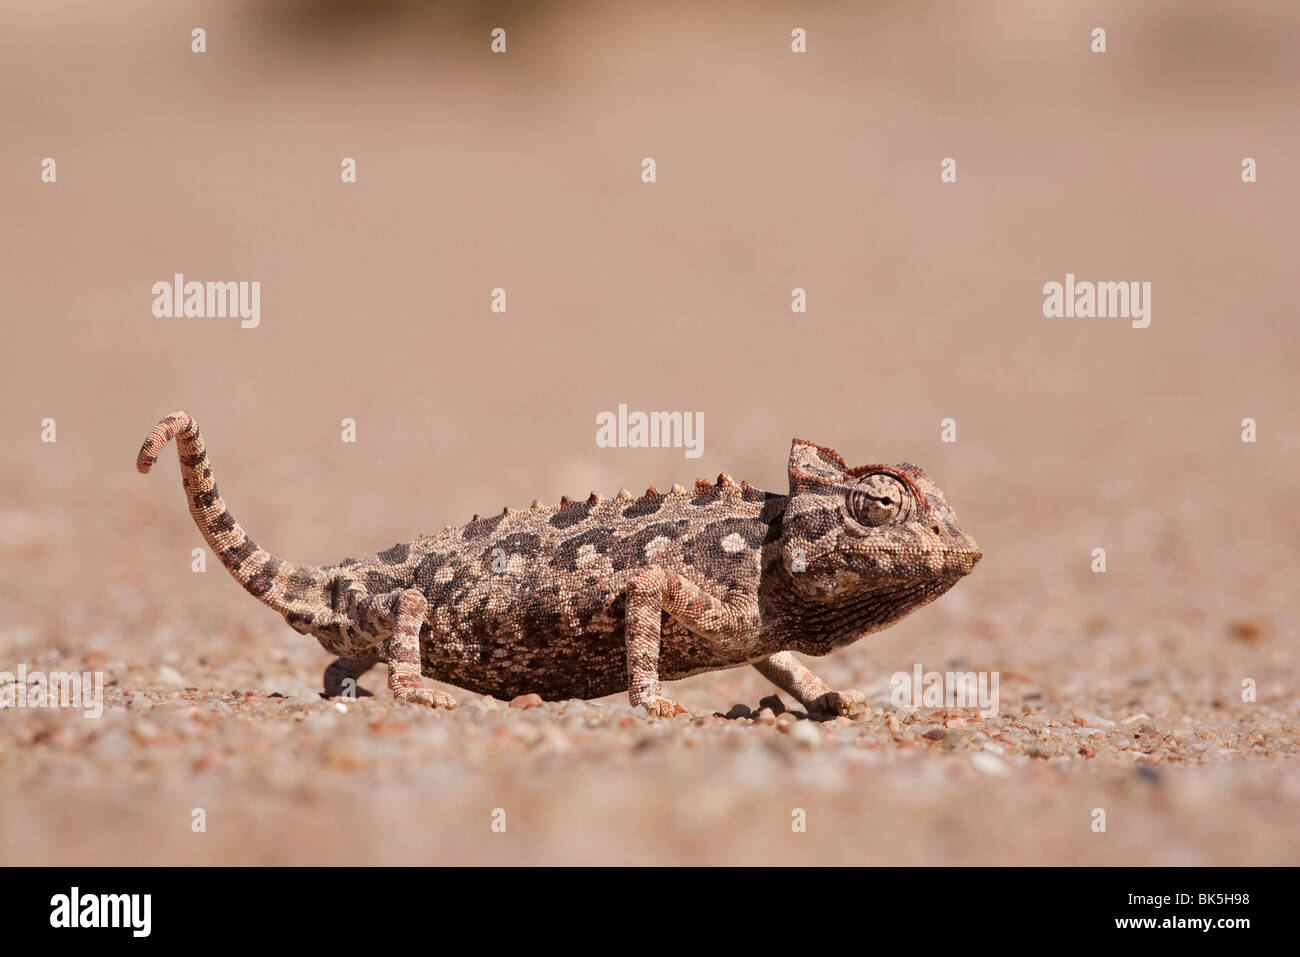 Namaqua chameleon (Chamaeleo namaquensis), Namib desert, Namibia, Africa Stock Photo